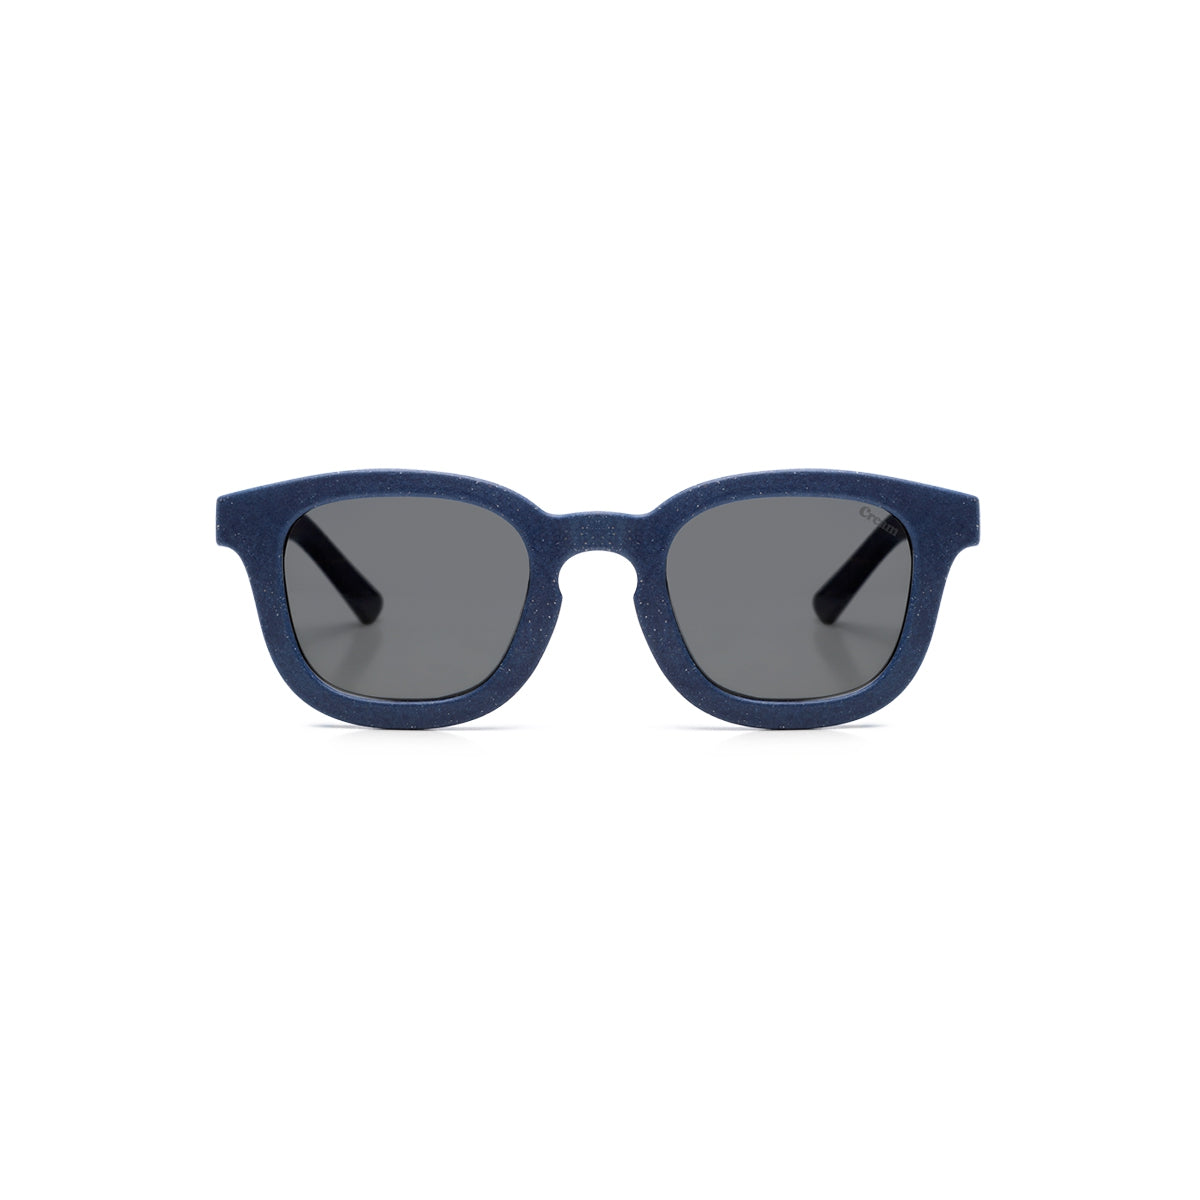 Kindersonnenbrille - Cream 02 | Navy